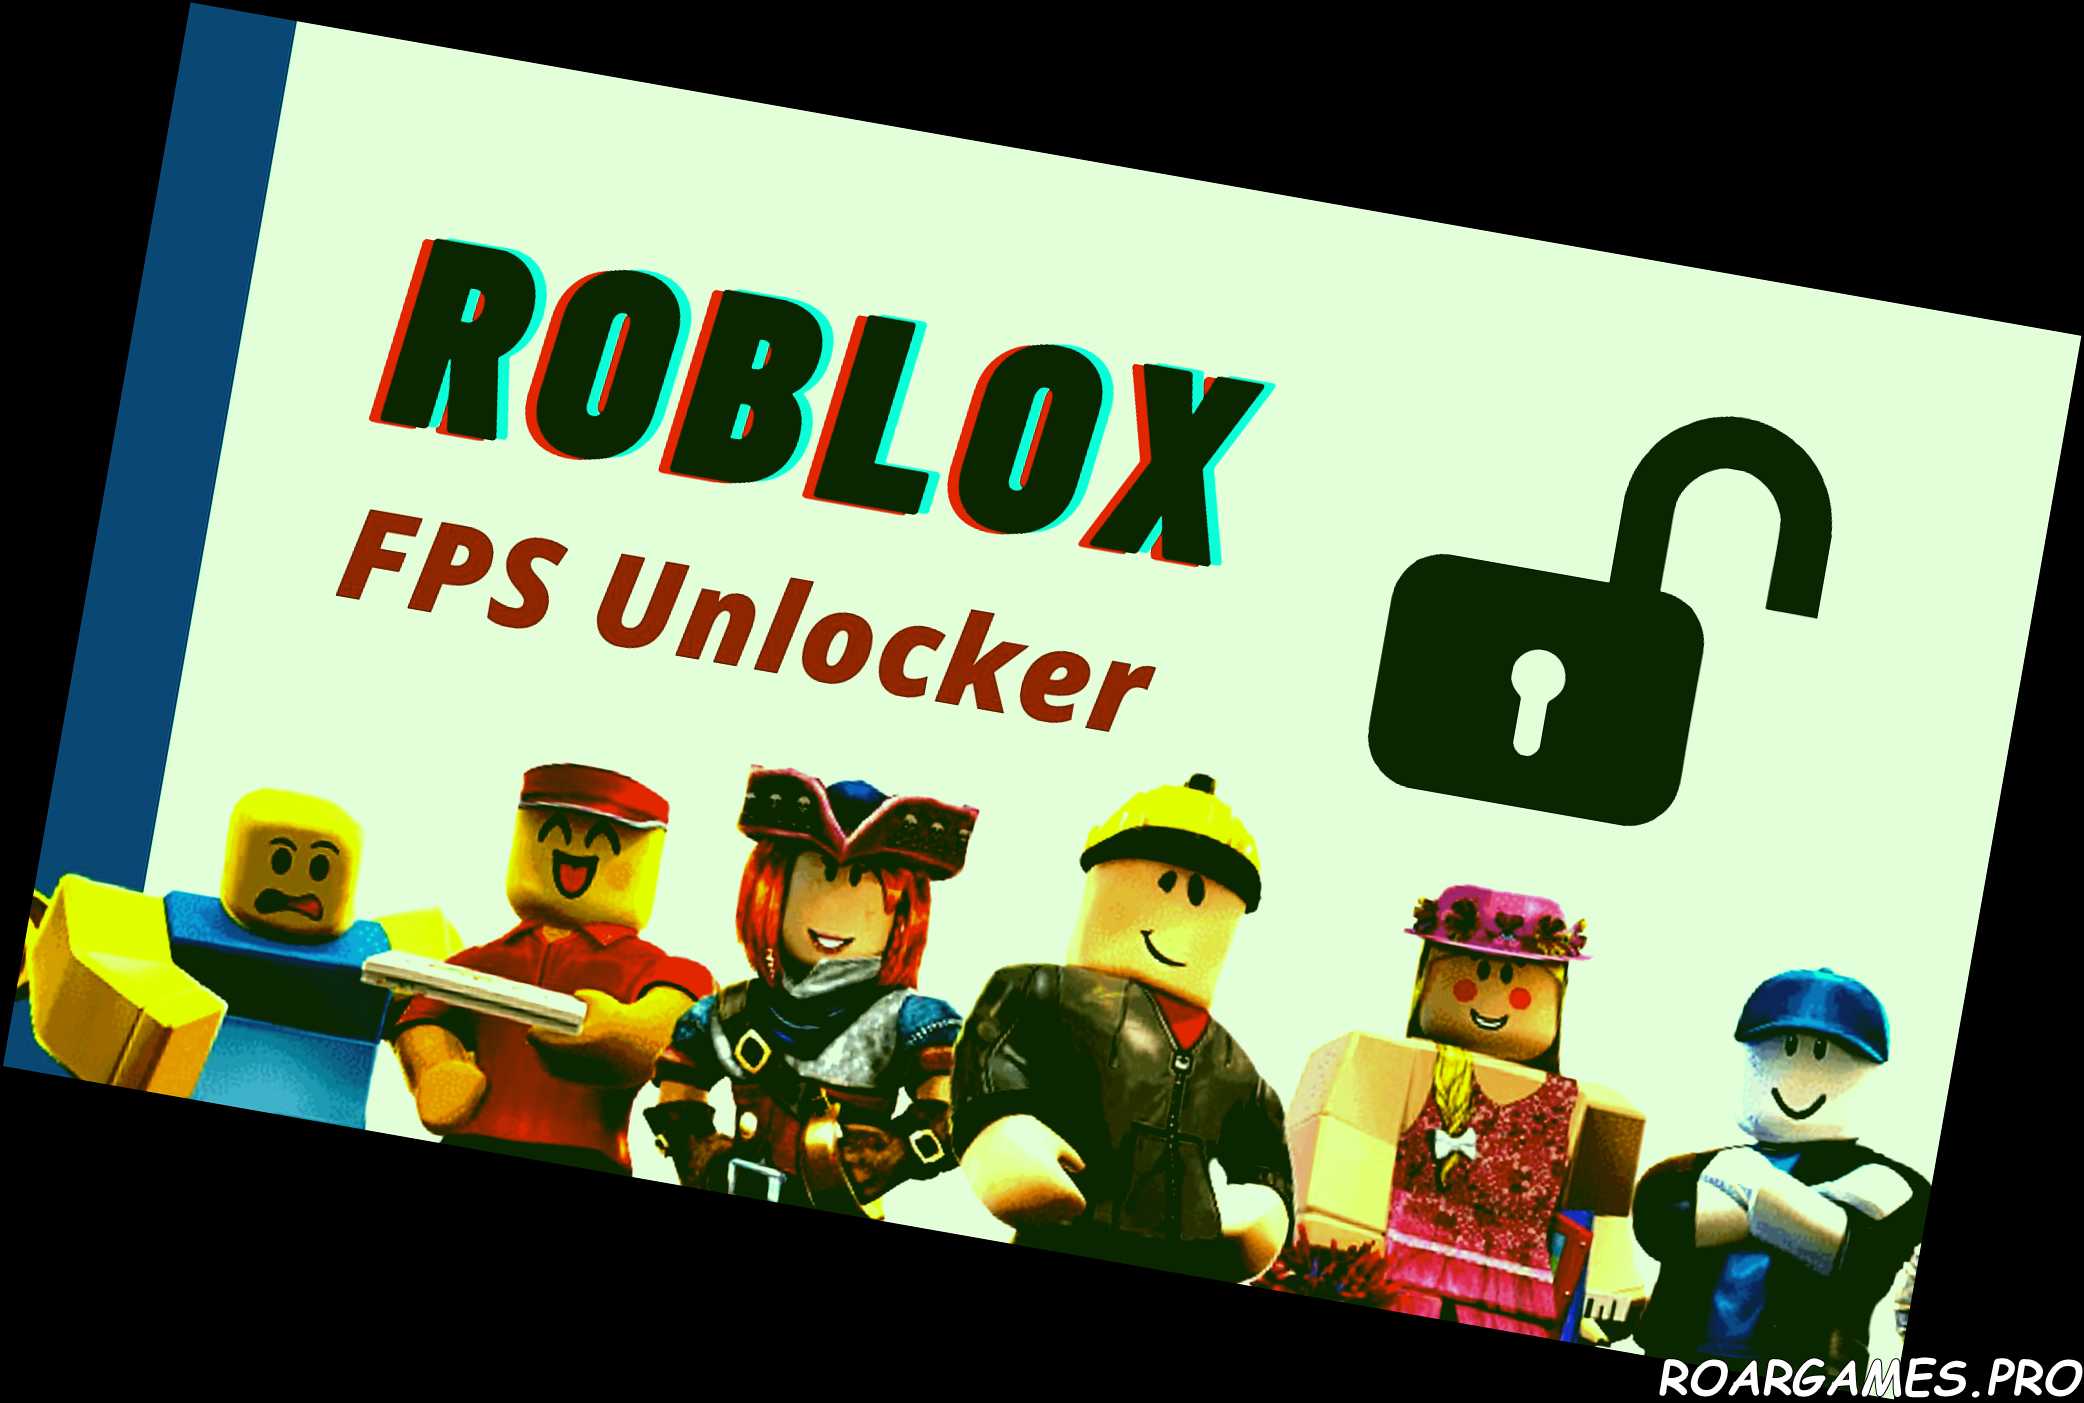 Roblox FPS Unlocker mejora tu juego de Roblox